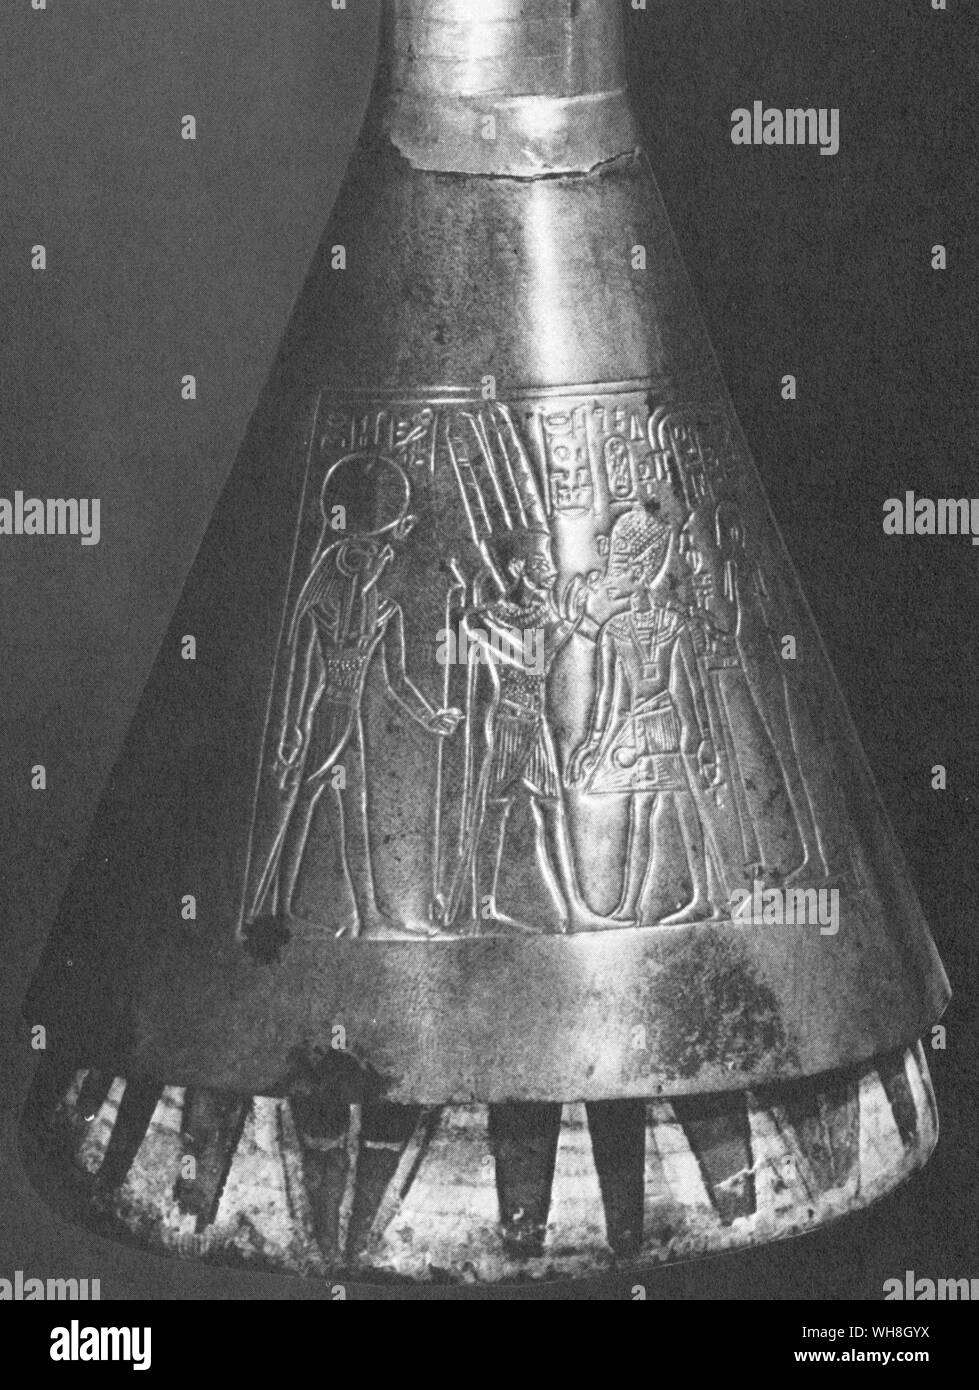 Trompete inTutankhamun Grab gefunden. Die Schätze von Tutanchamun, der Katalog zur Ausstellung von I E S Edwards, Seite 147. Stockfoto